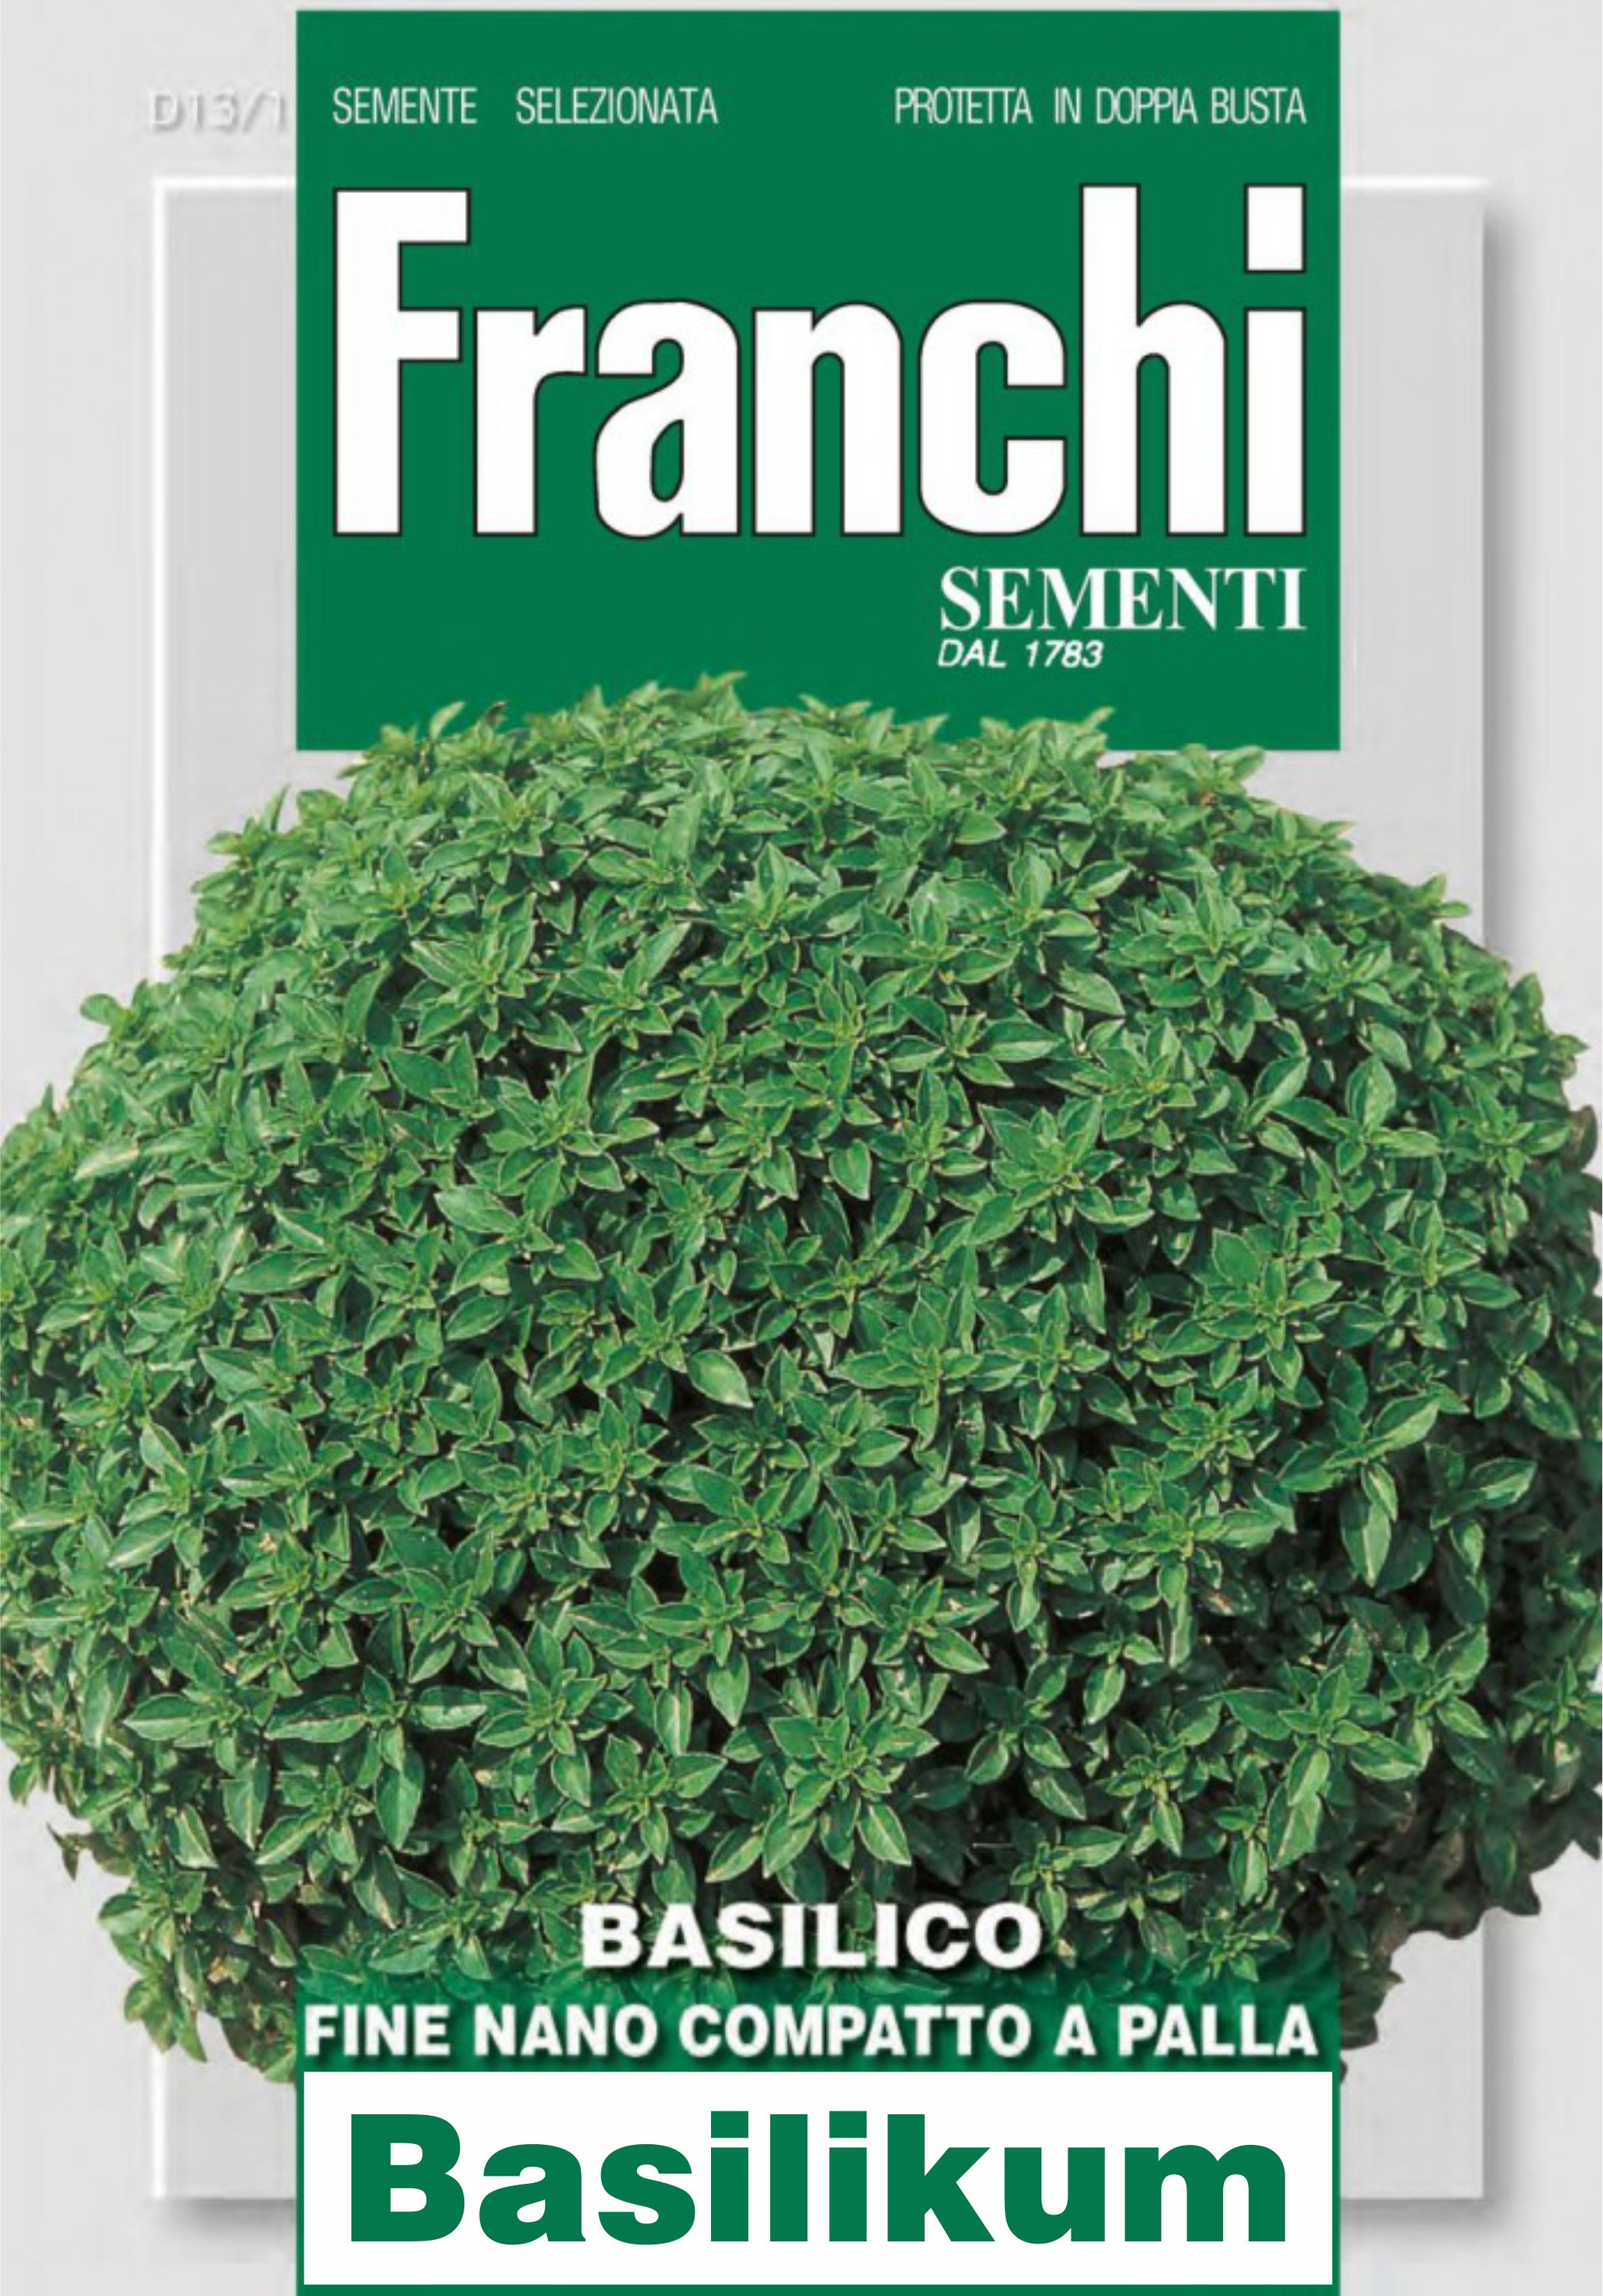 Franchi sementi, Samentüte Basilikum Samen Fine Verde Nano Compatto A Palla